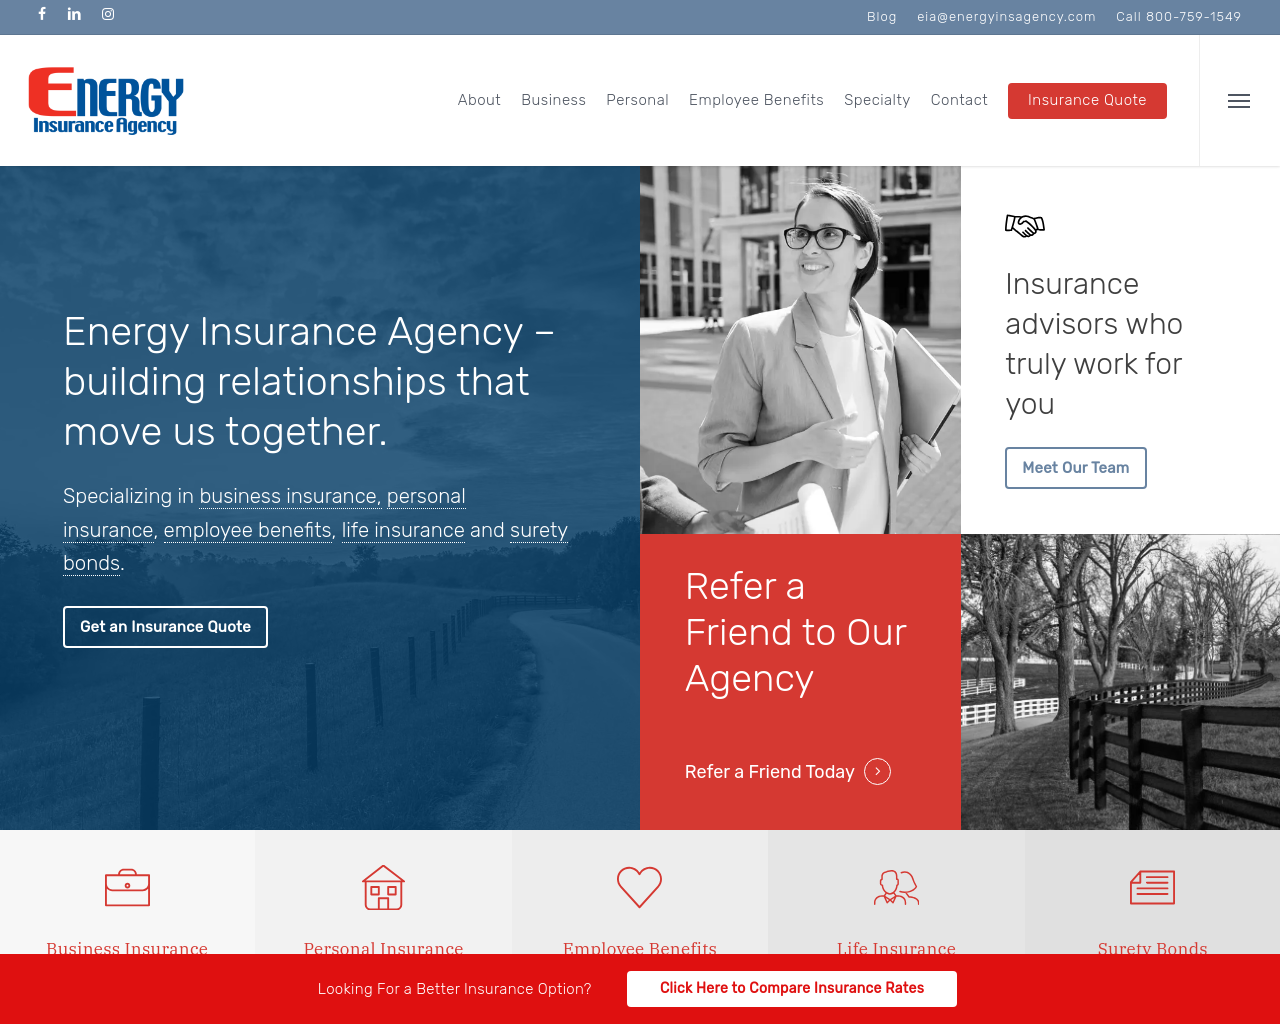 energyinsuranceagency.com